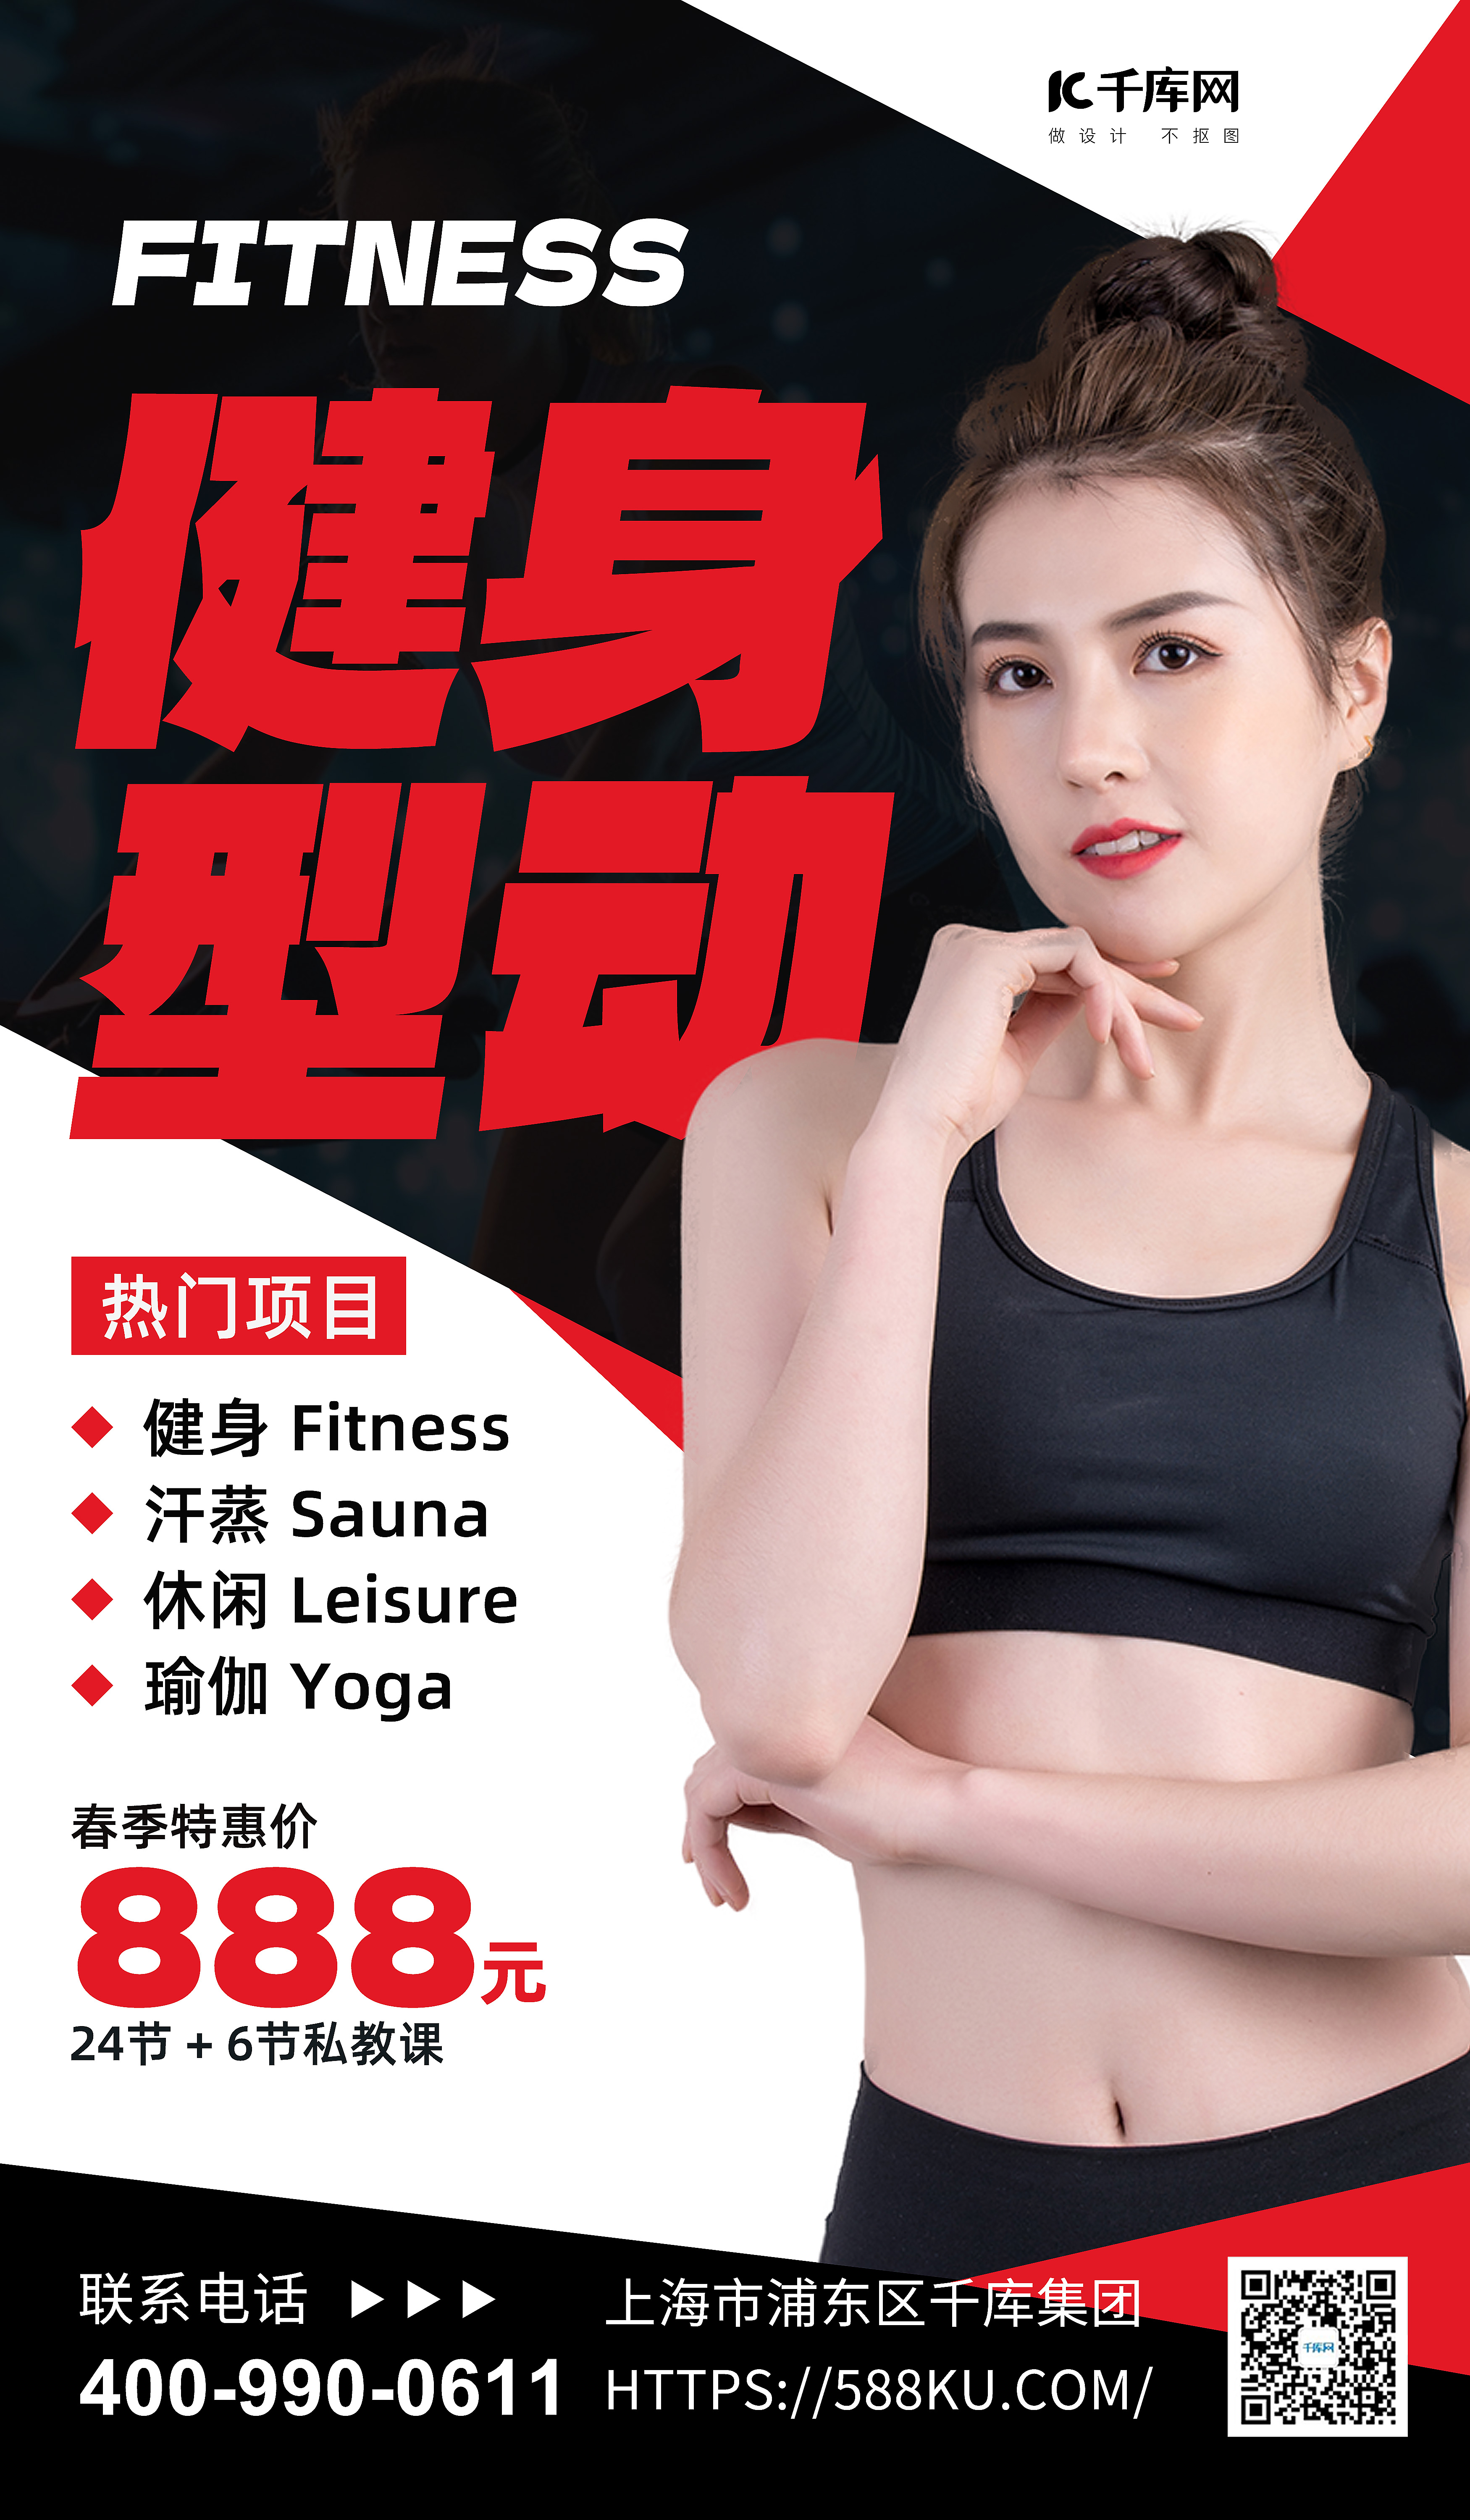 春季健身健身模特黑红色简约海报宣传海报设计图片